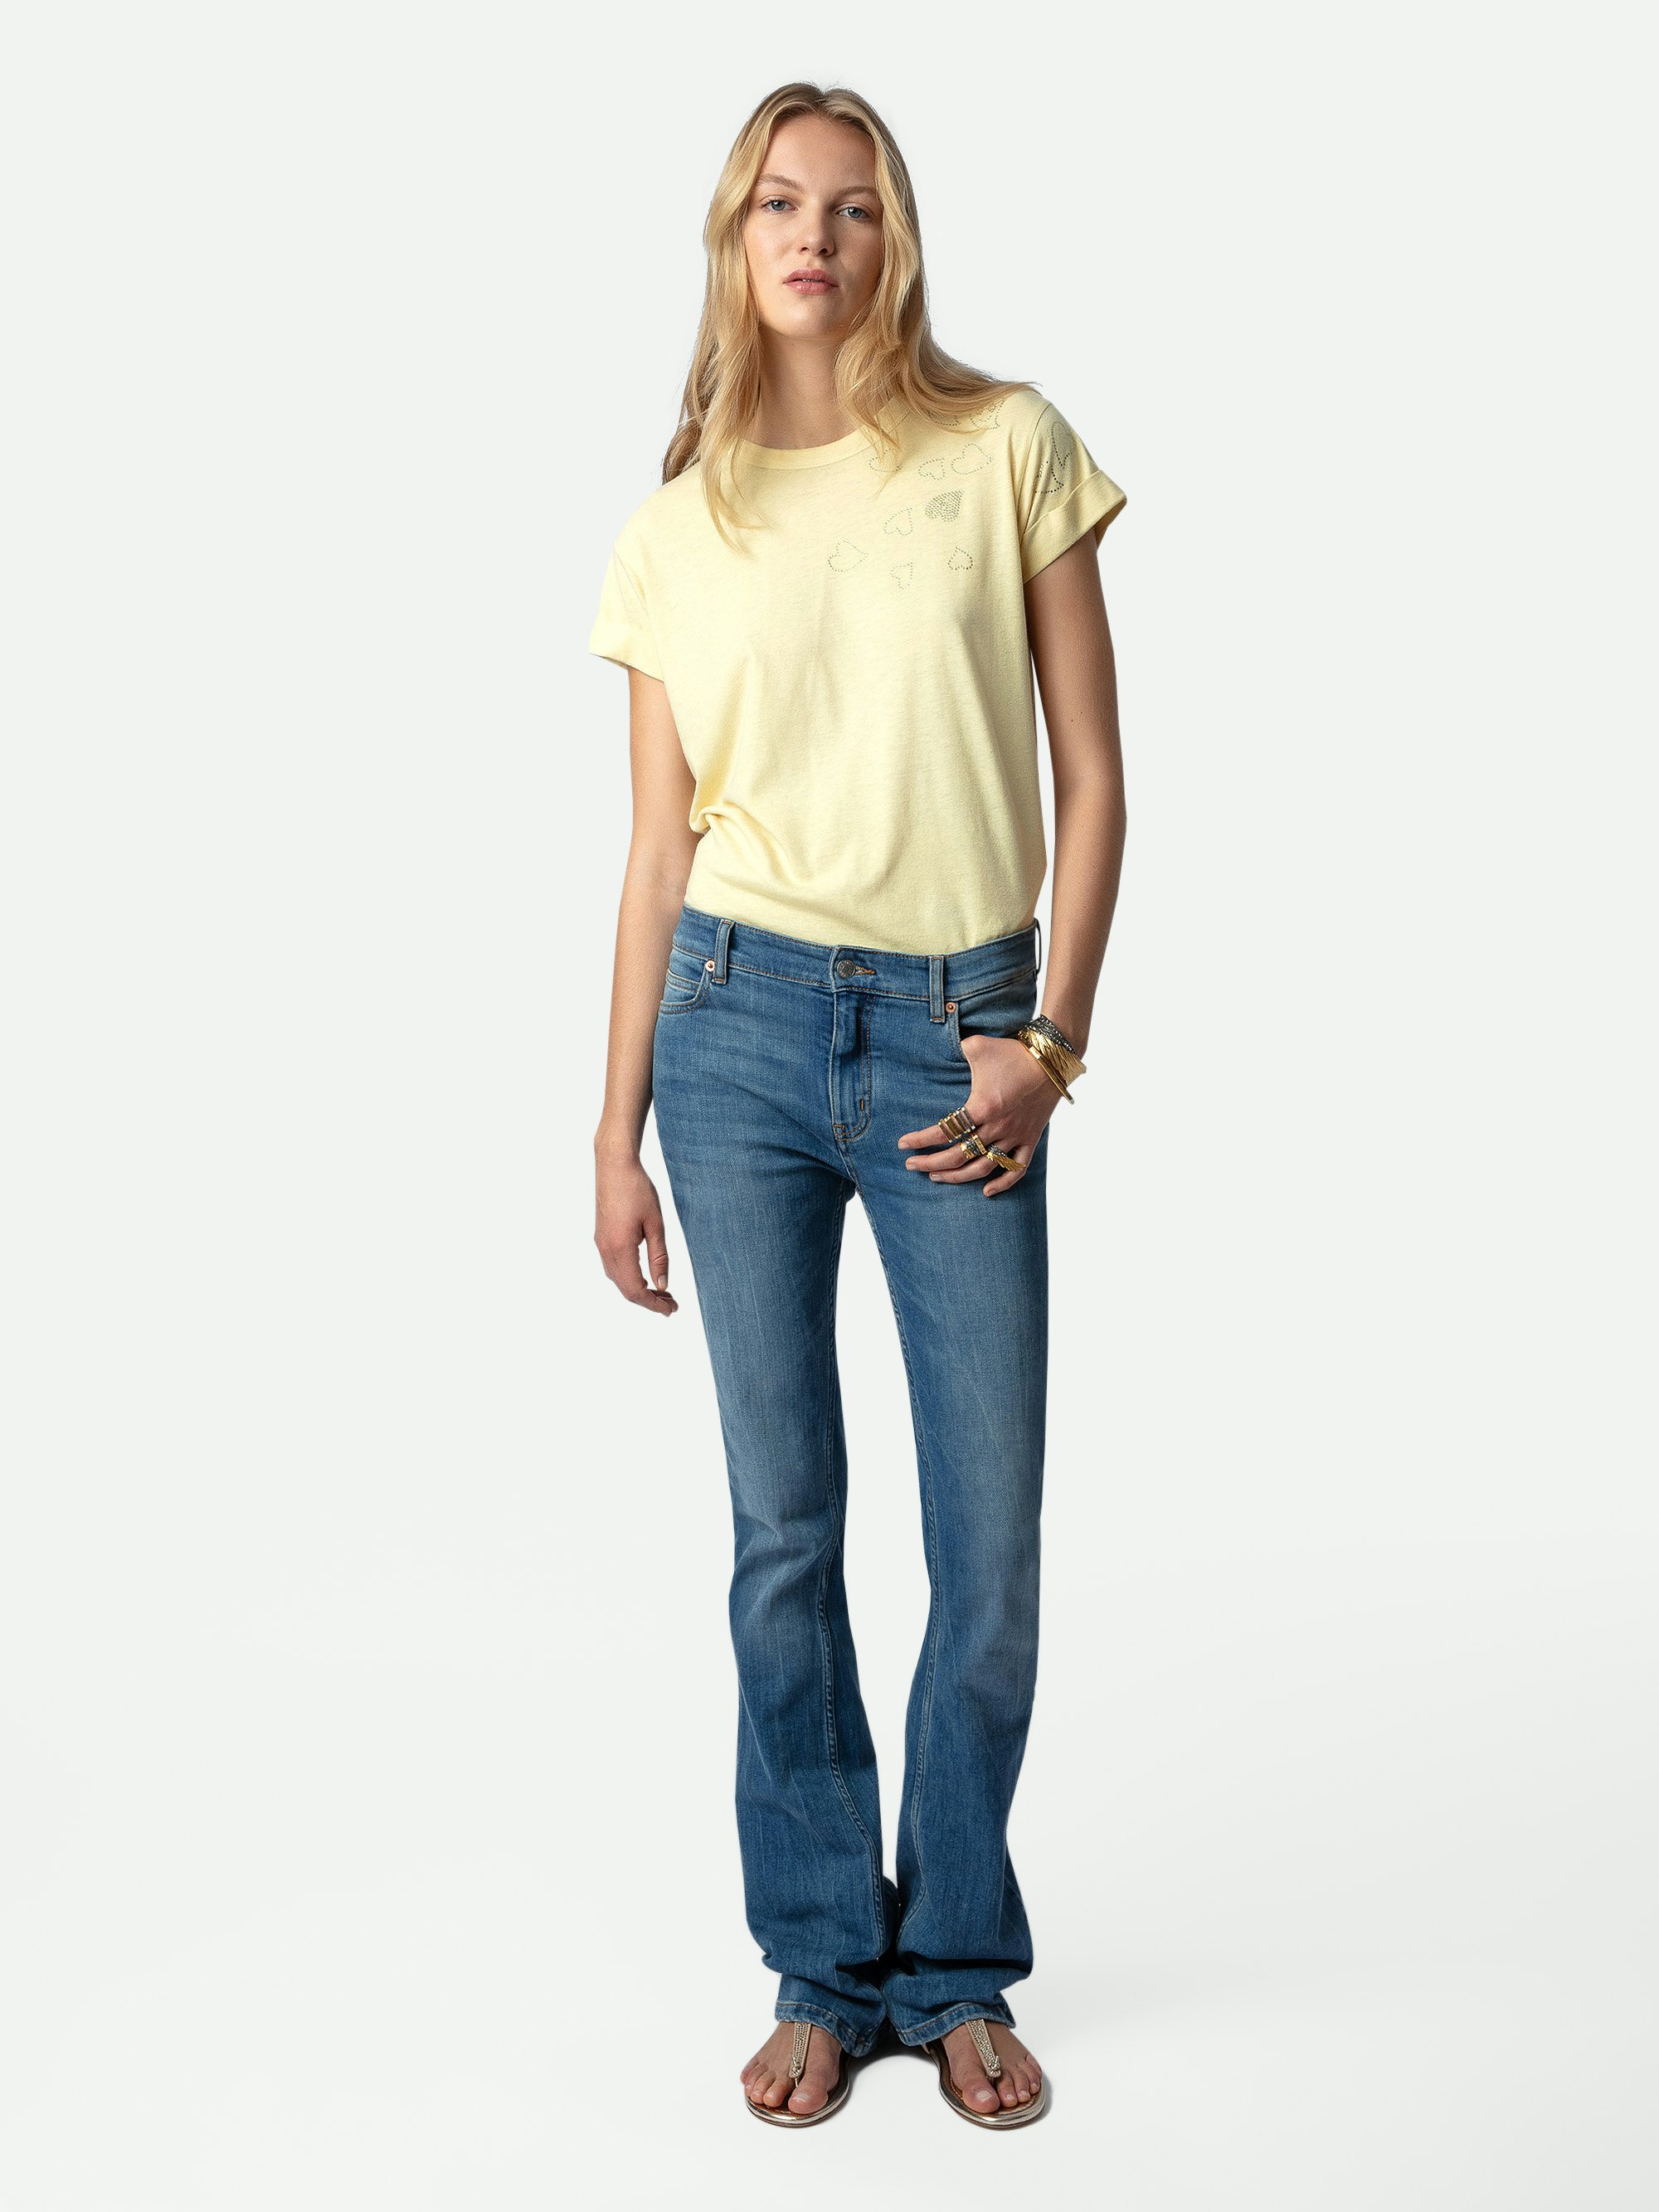 T-shirt Anya Strass - T shirt giallo chiaro girocollo con maniche corte e strass a cuore.